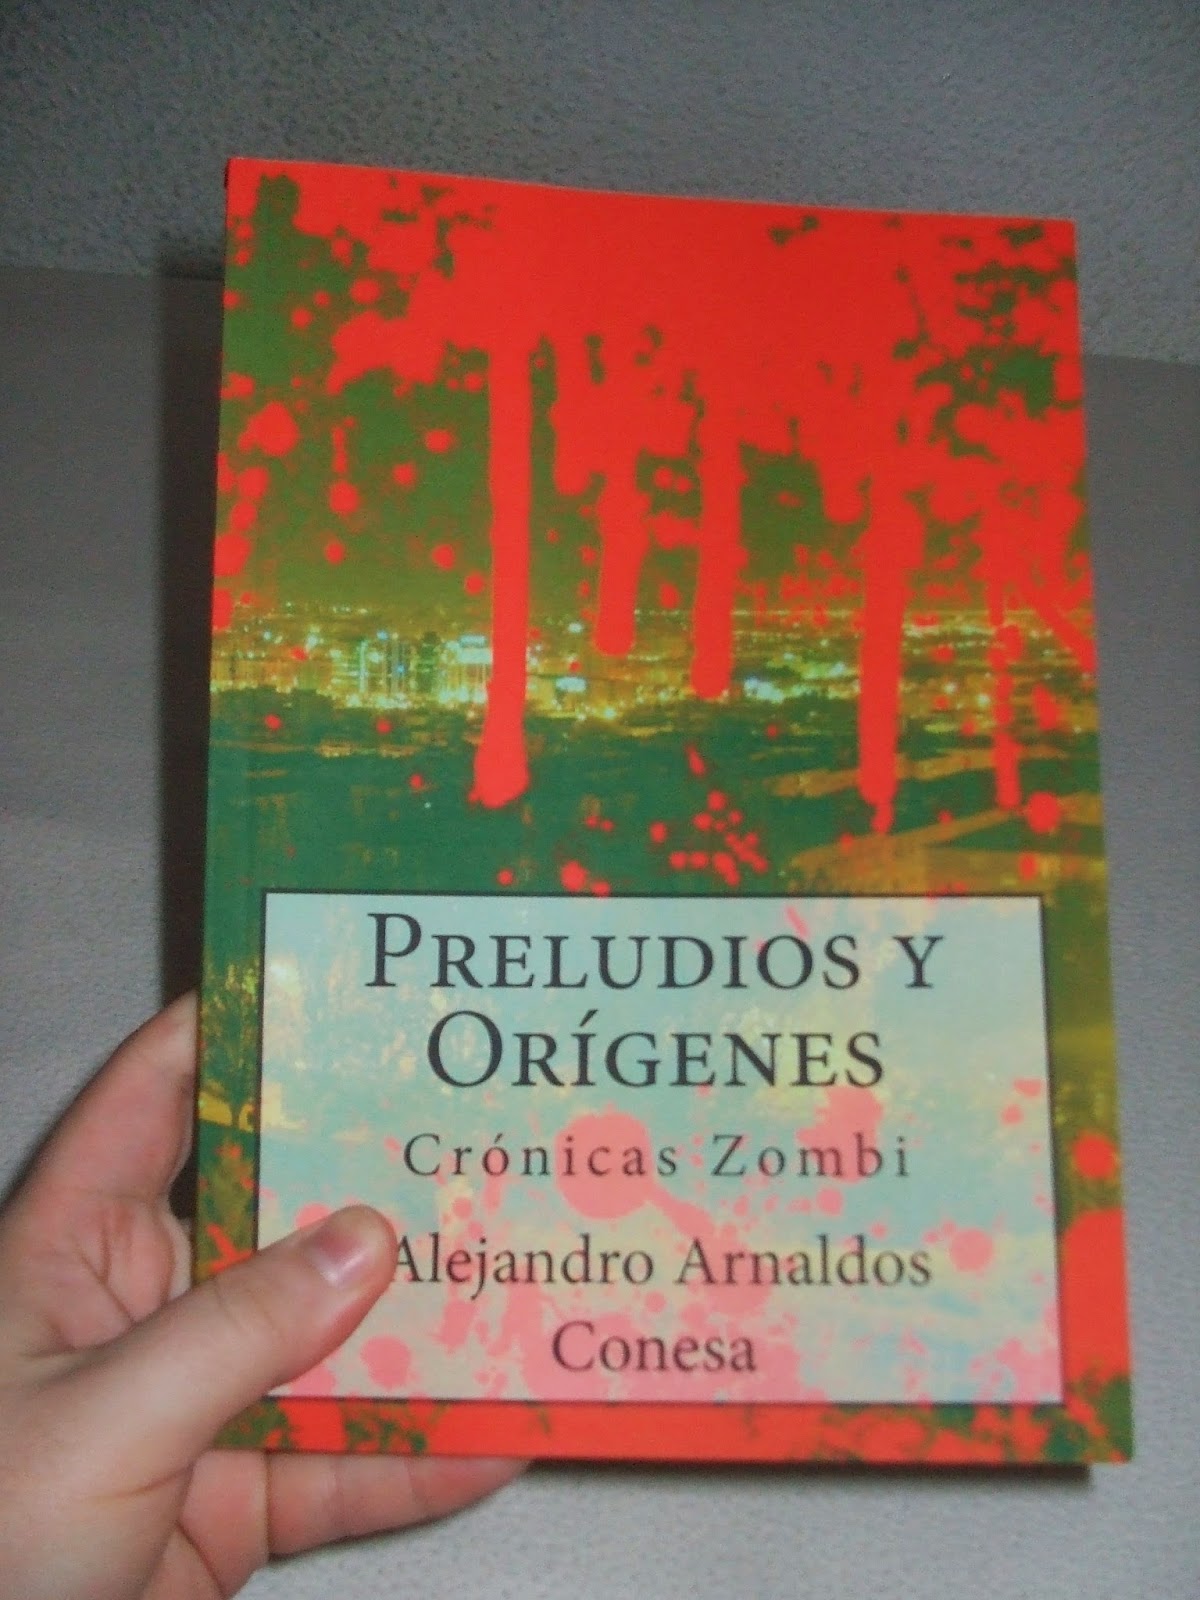 http://www.amazon.es/Preludios-Or%C3%ADgenes-Alejandor-Arnaldos-Conesa/dp/1499503431/ref=tmm_pap_title_0?ie=UTF8&qid=1372070195&sr=1-2